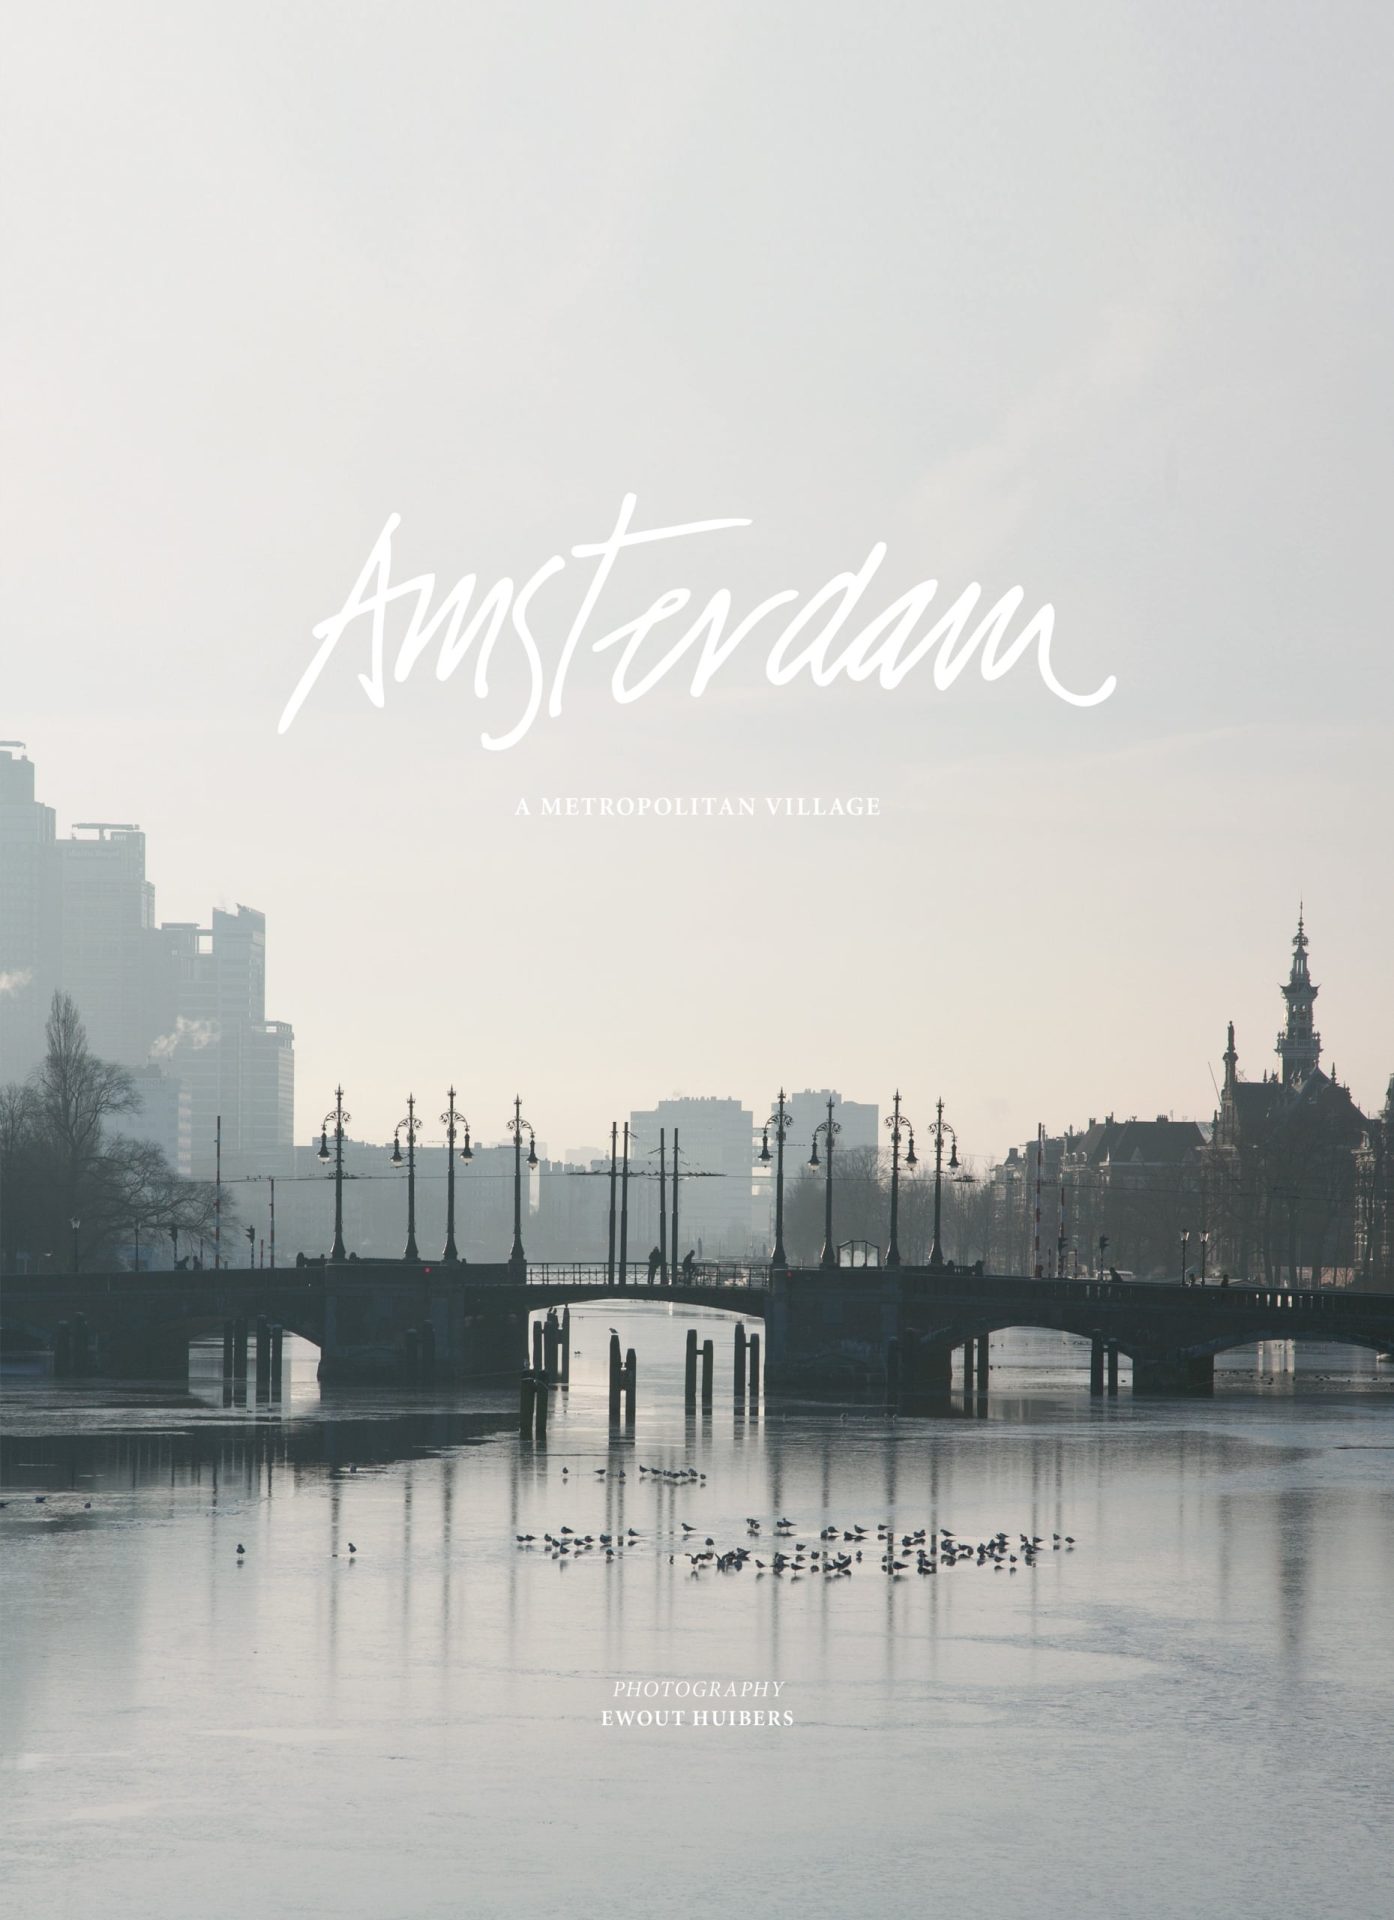 Amsterdam, A Metropolitan Village